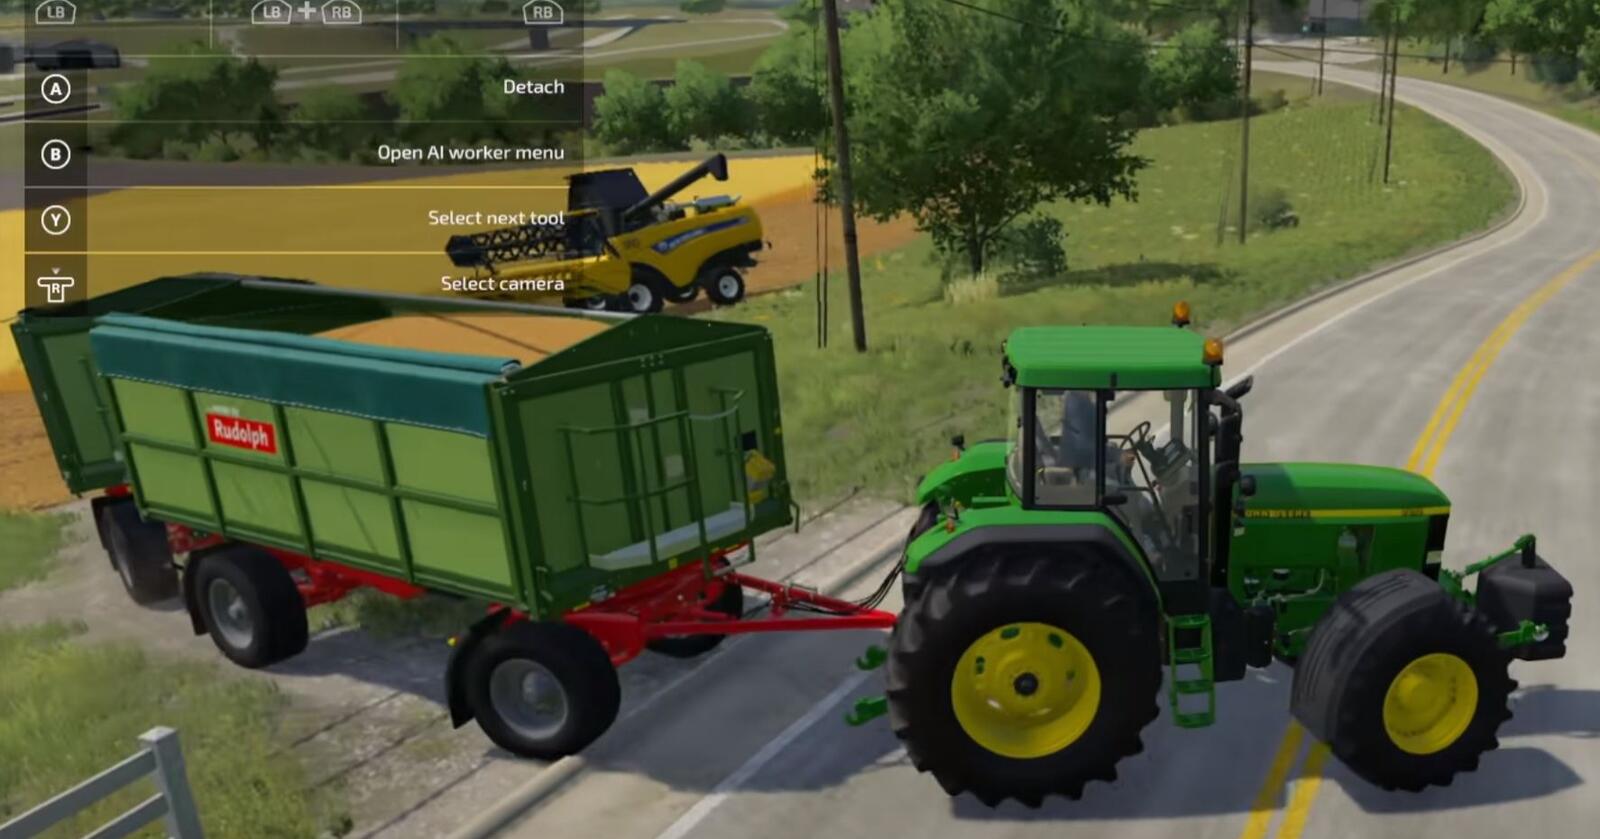 Farming simulator 2022 kan friste med bedre visuelle effekter og nye maskiner. Her er en skjermdump fra spilldemoen. 